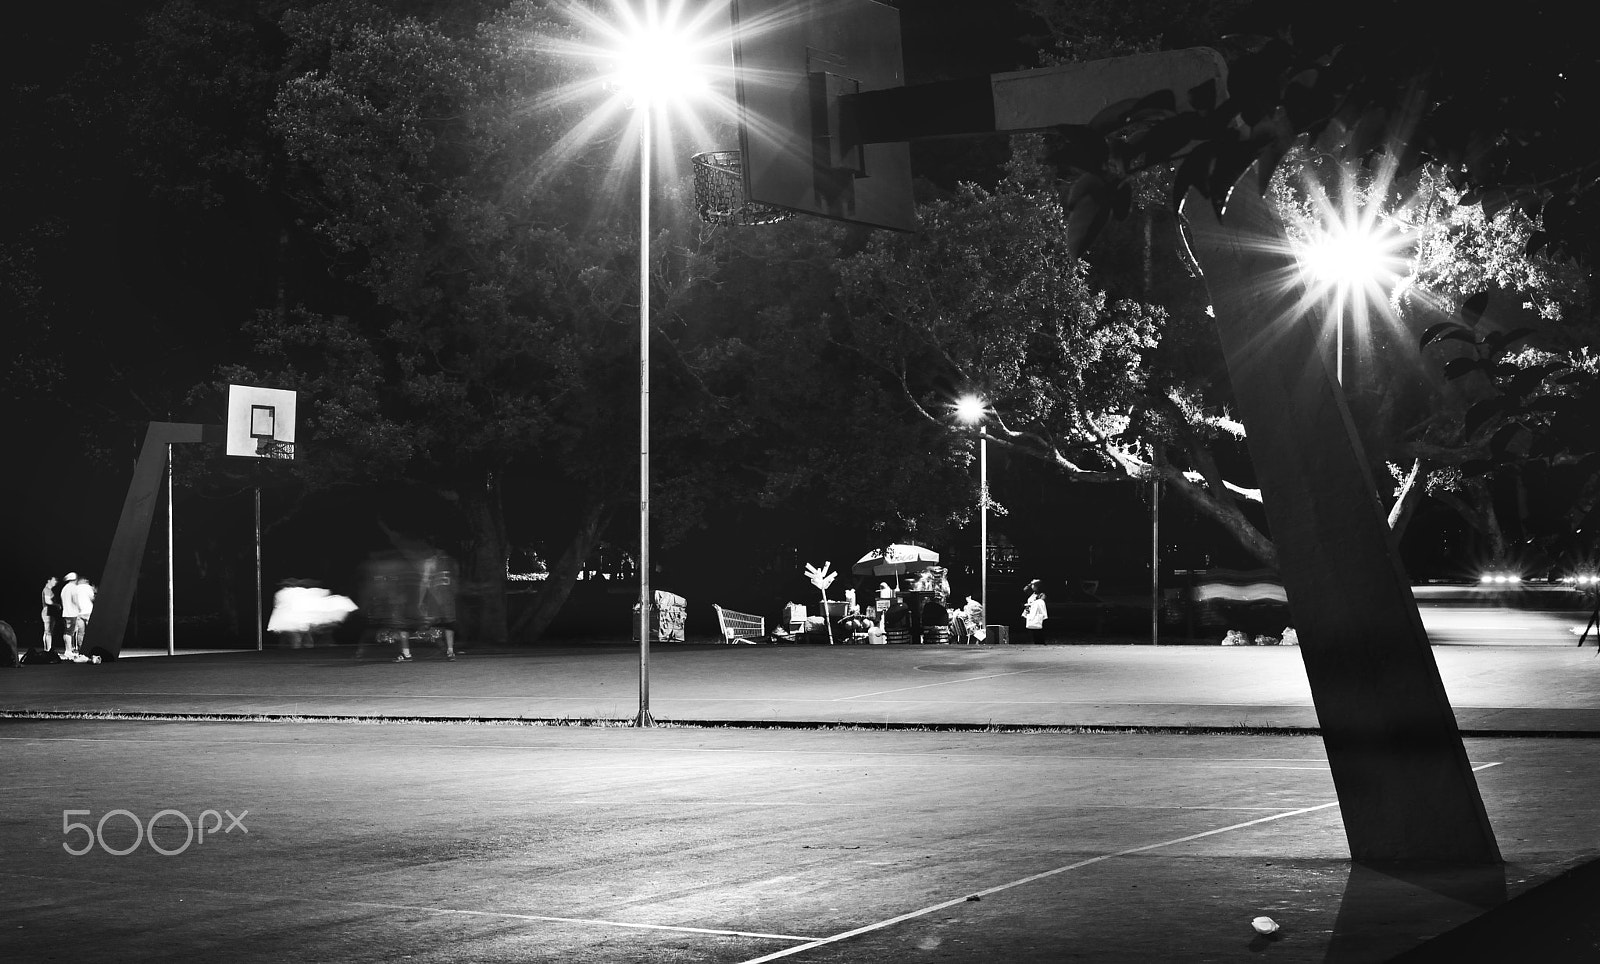 Nikon D7100 + Nikon PC-E Nikkor 24mm F3.5D ED Tilt-Shift sample photo. Basketball at night photography